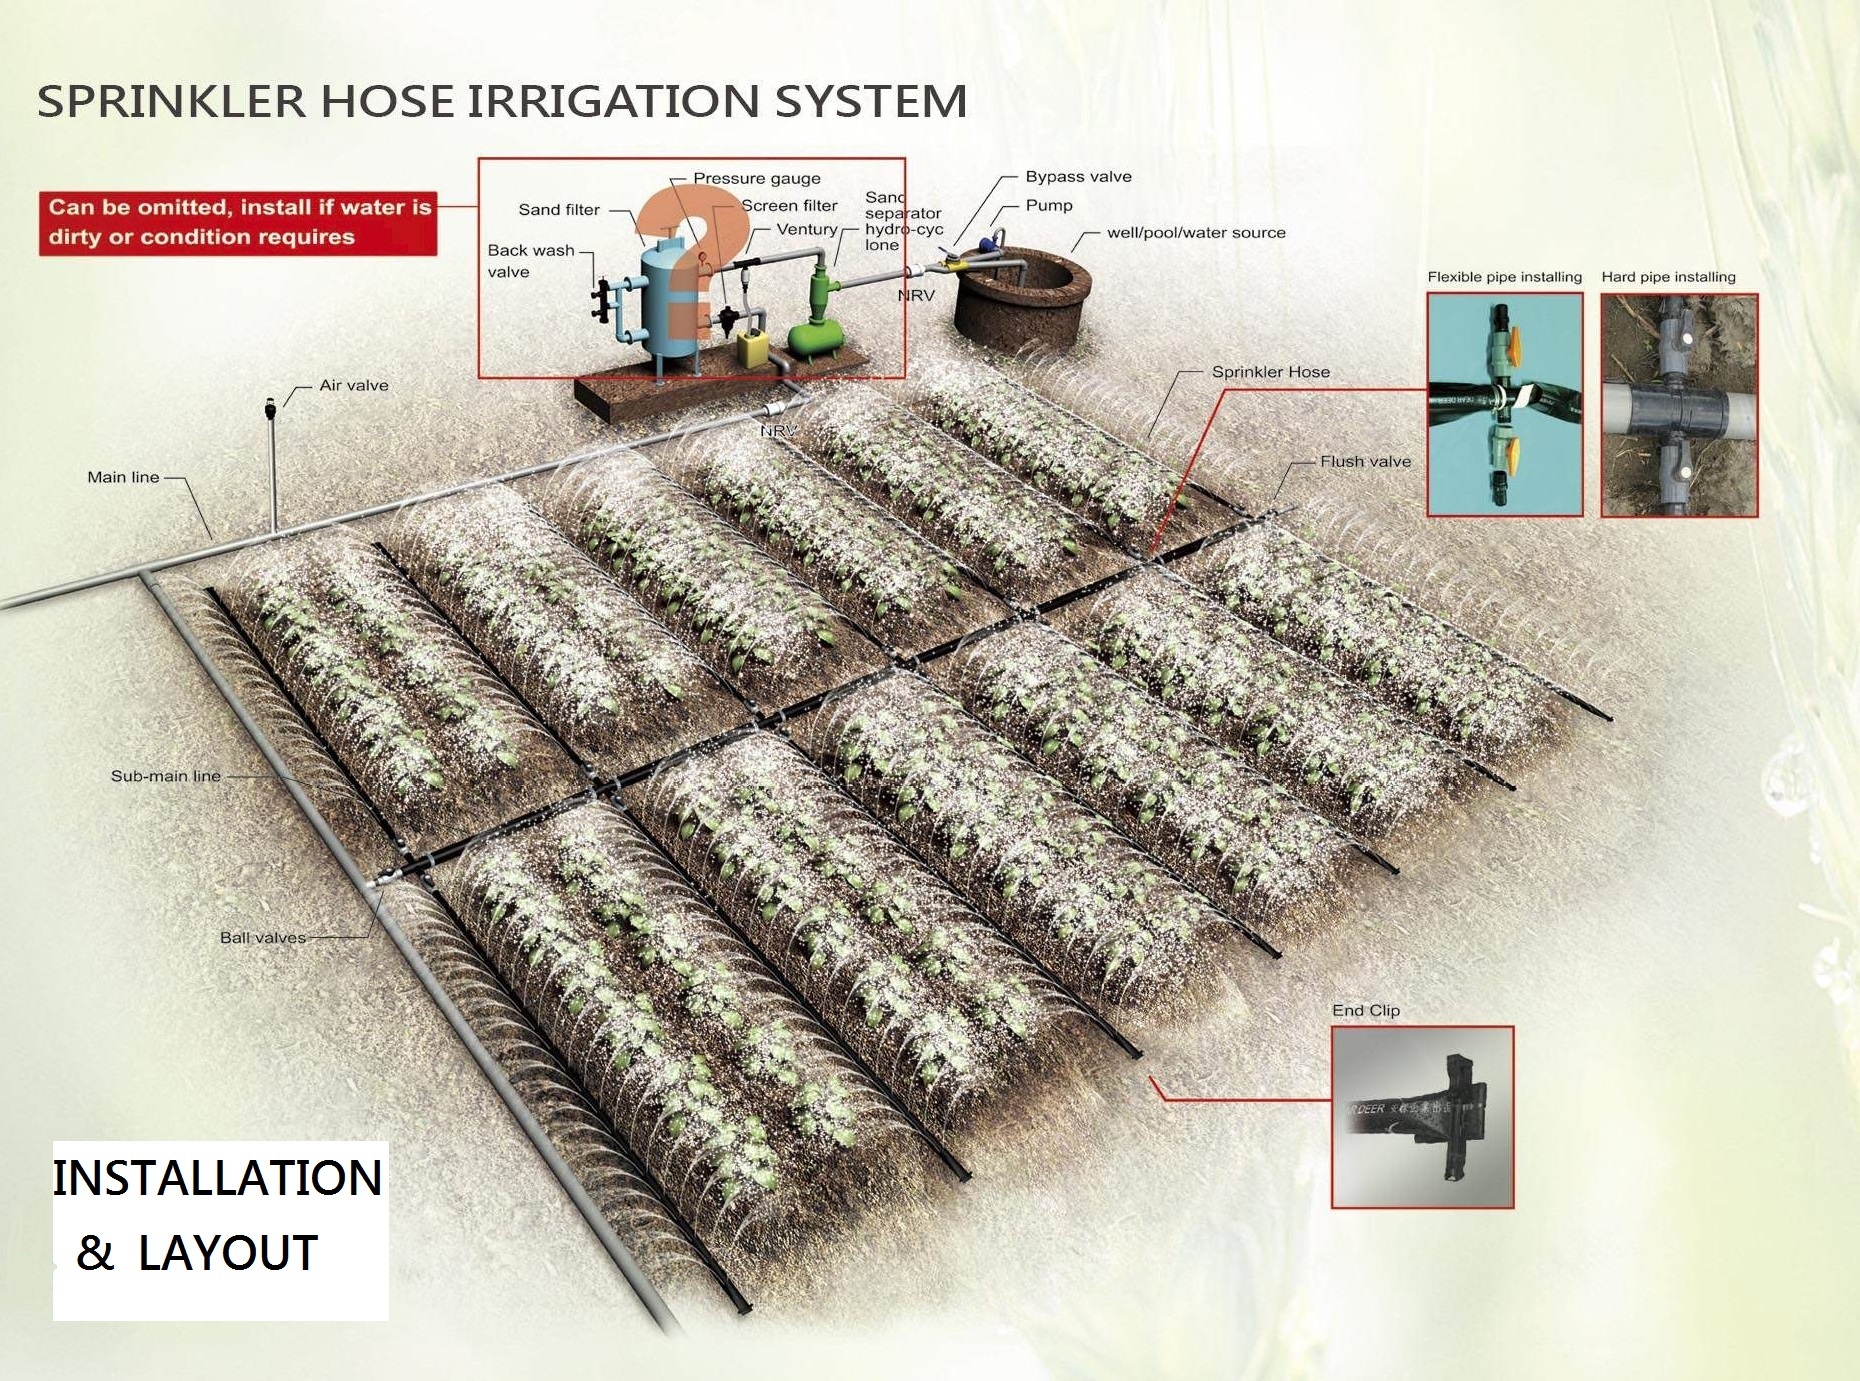 Installation of sprinkler hose irrigation system